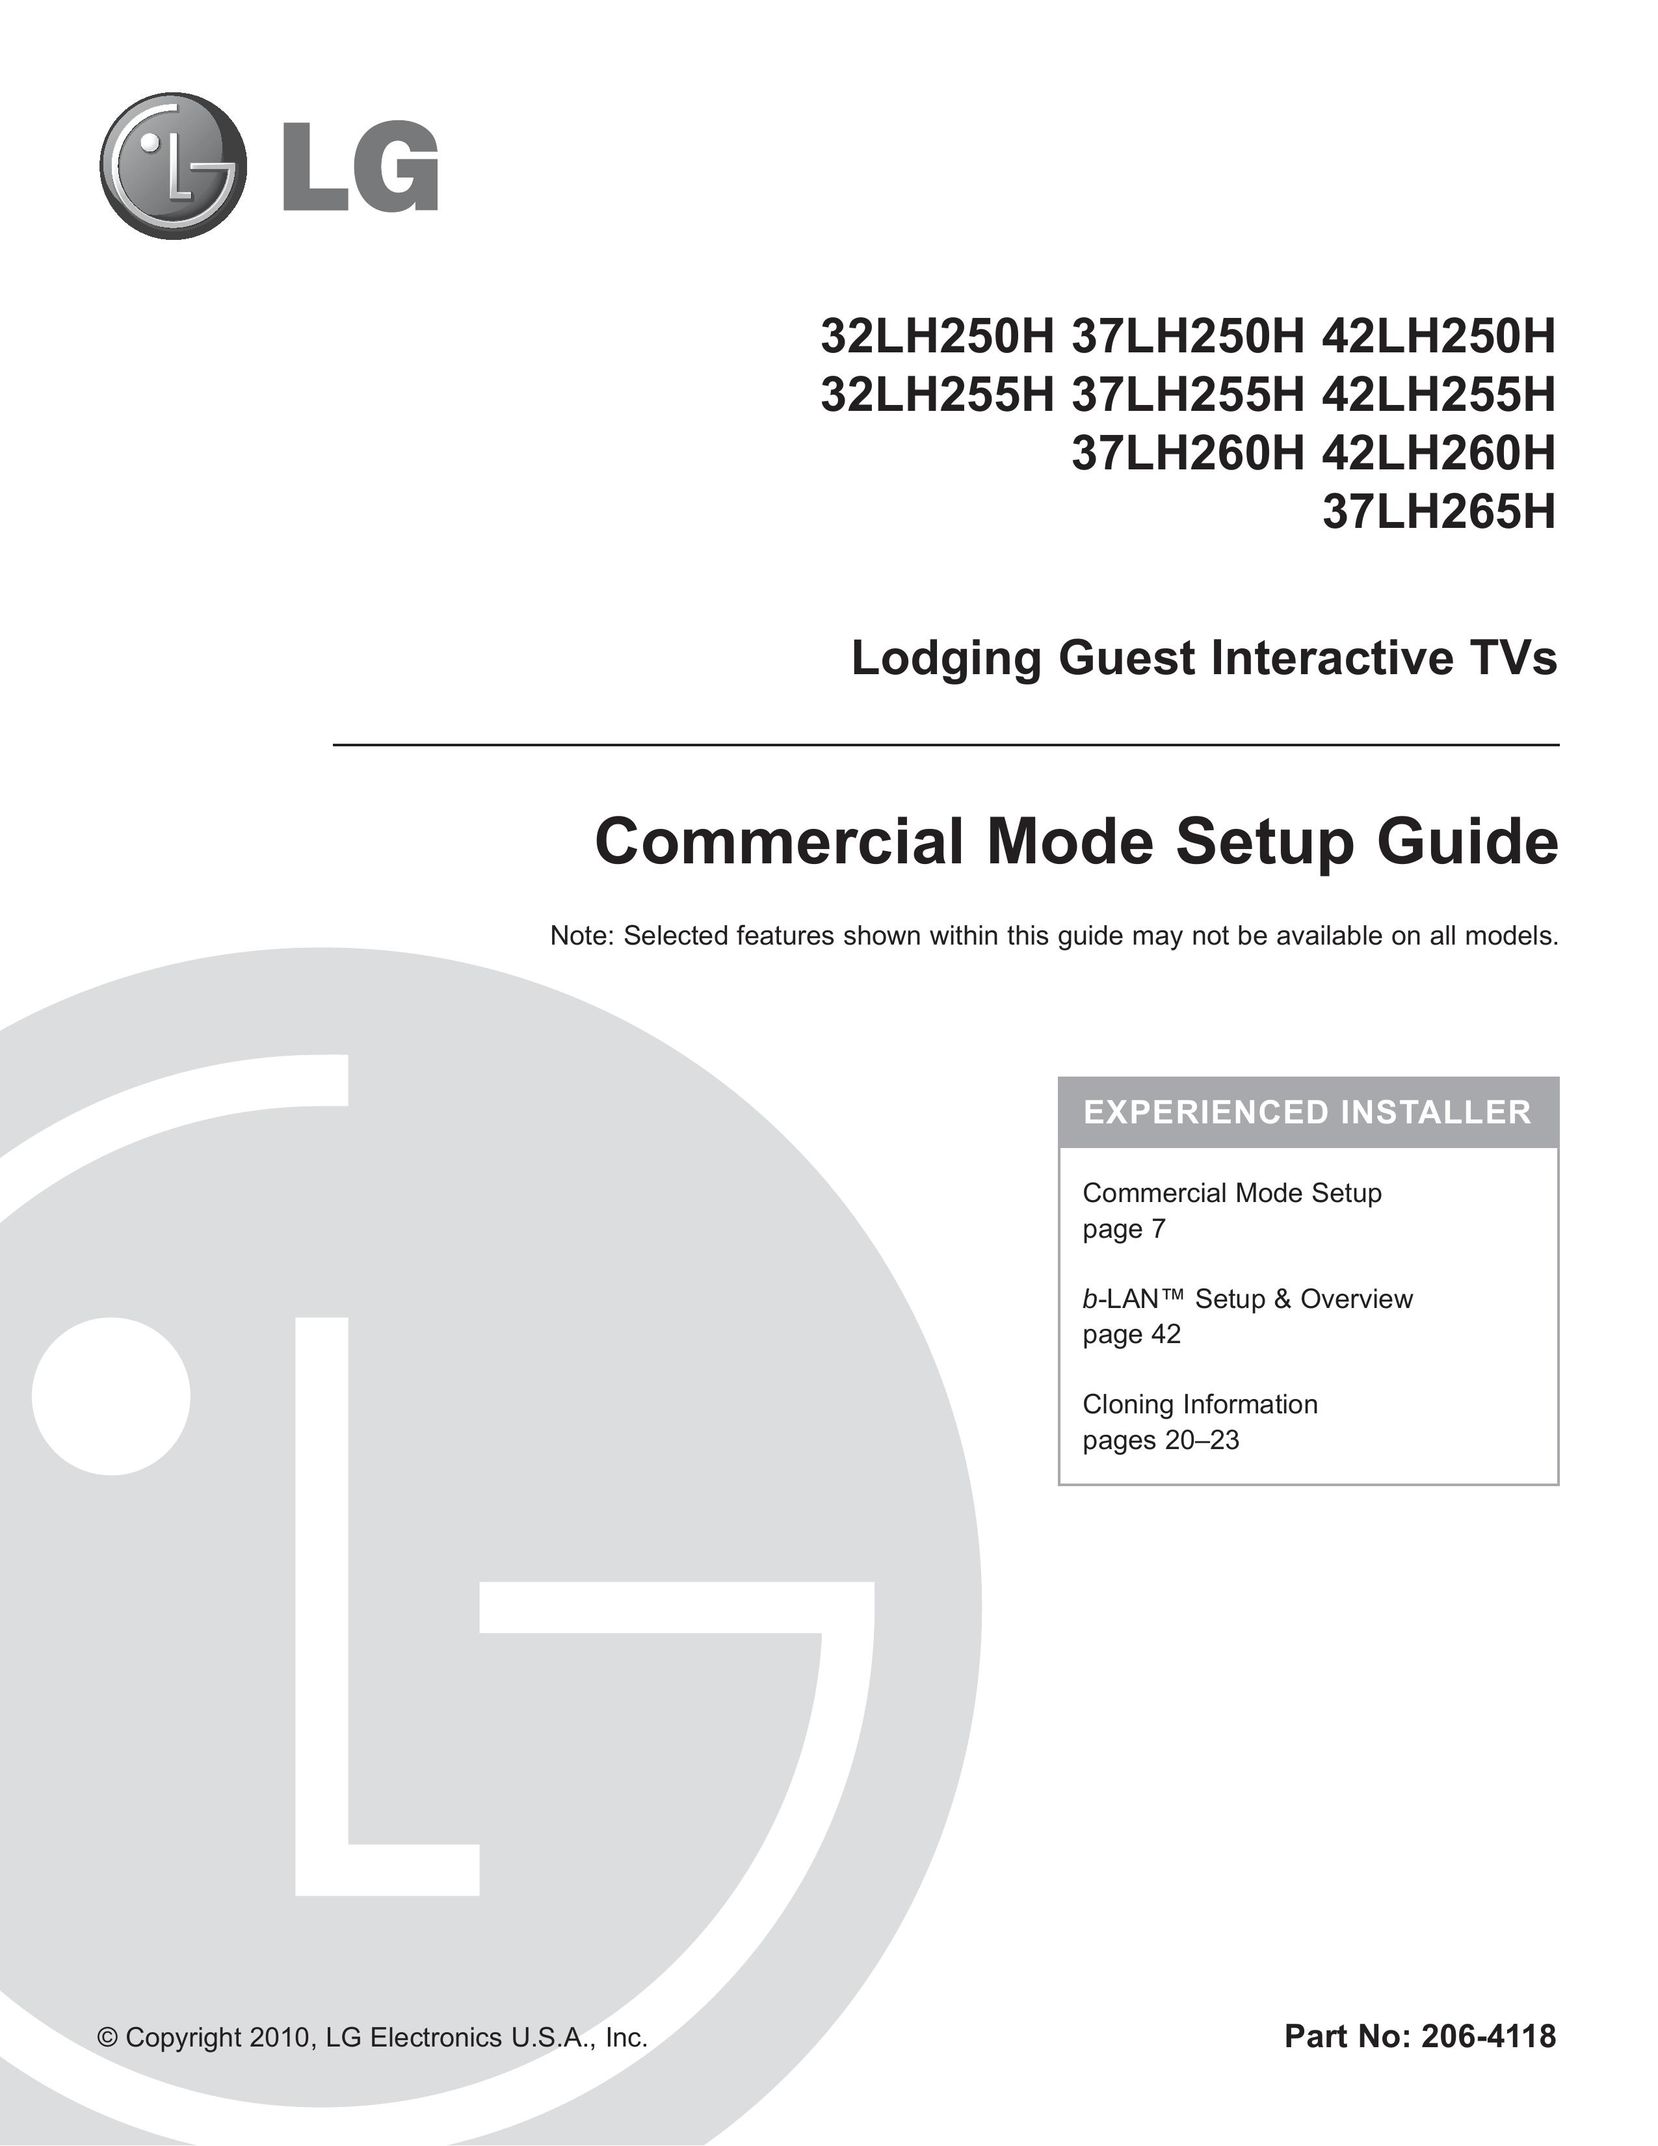 LG Electronics 37LH265H Car Satellite TV System User Manual